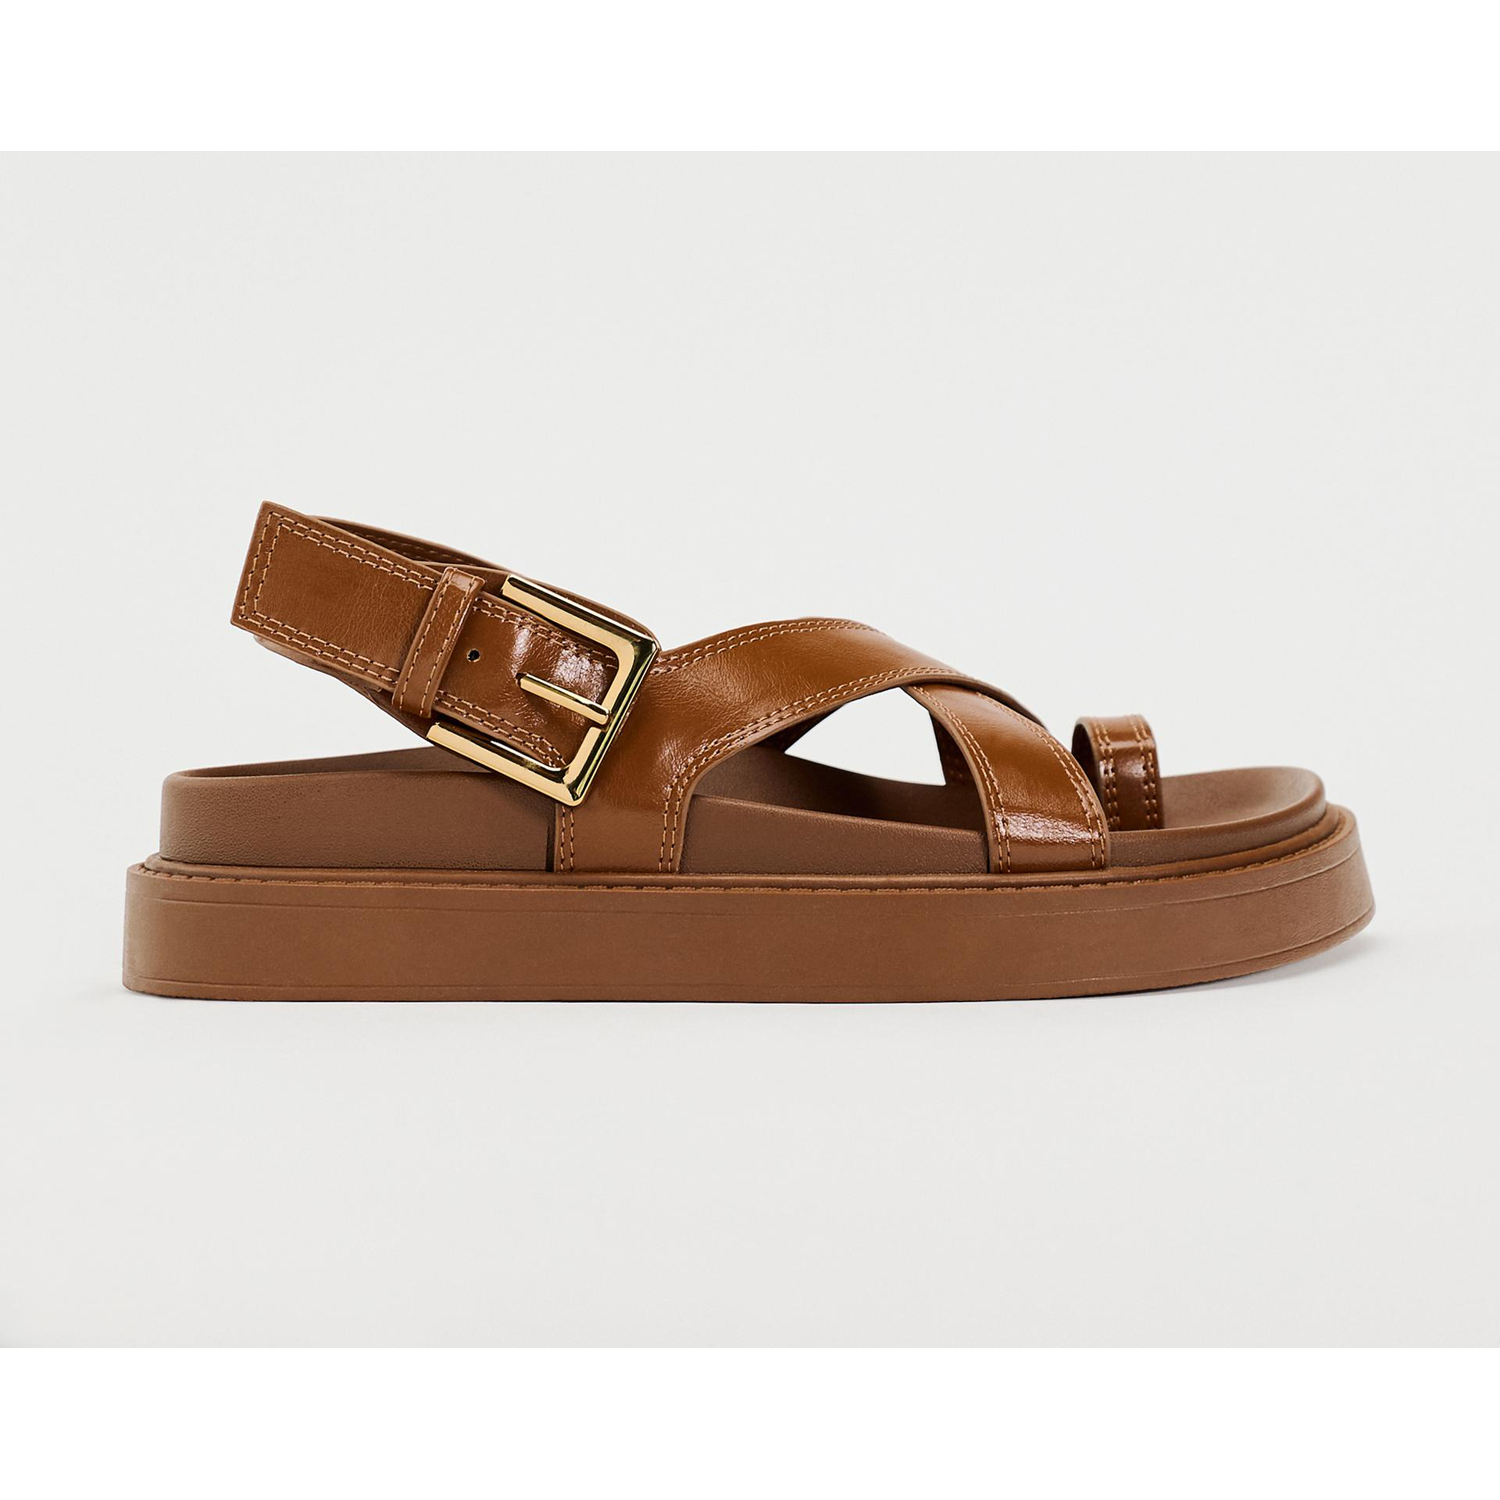 Сандалии Zara Crossed Strap Flat, коричневый сандалии с перемычкой кожаные 39 золотистый